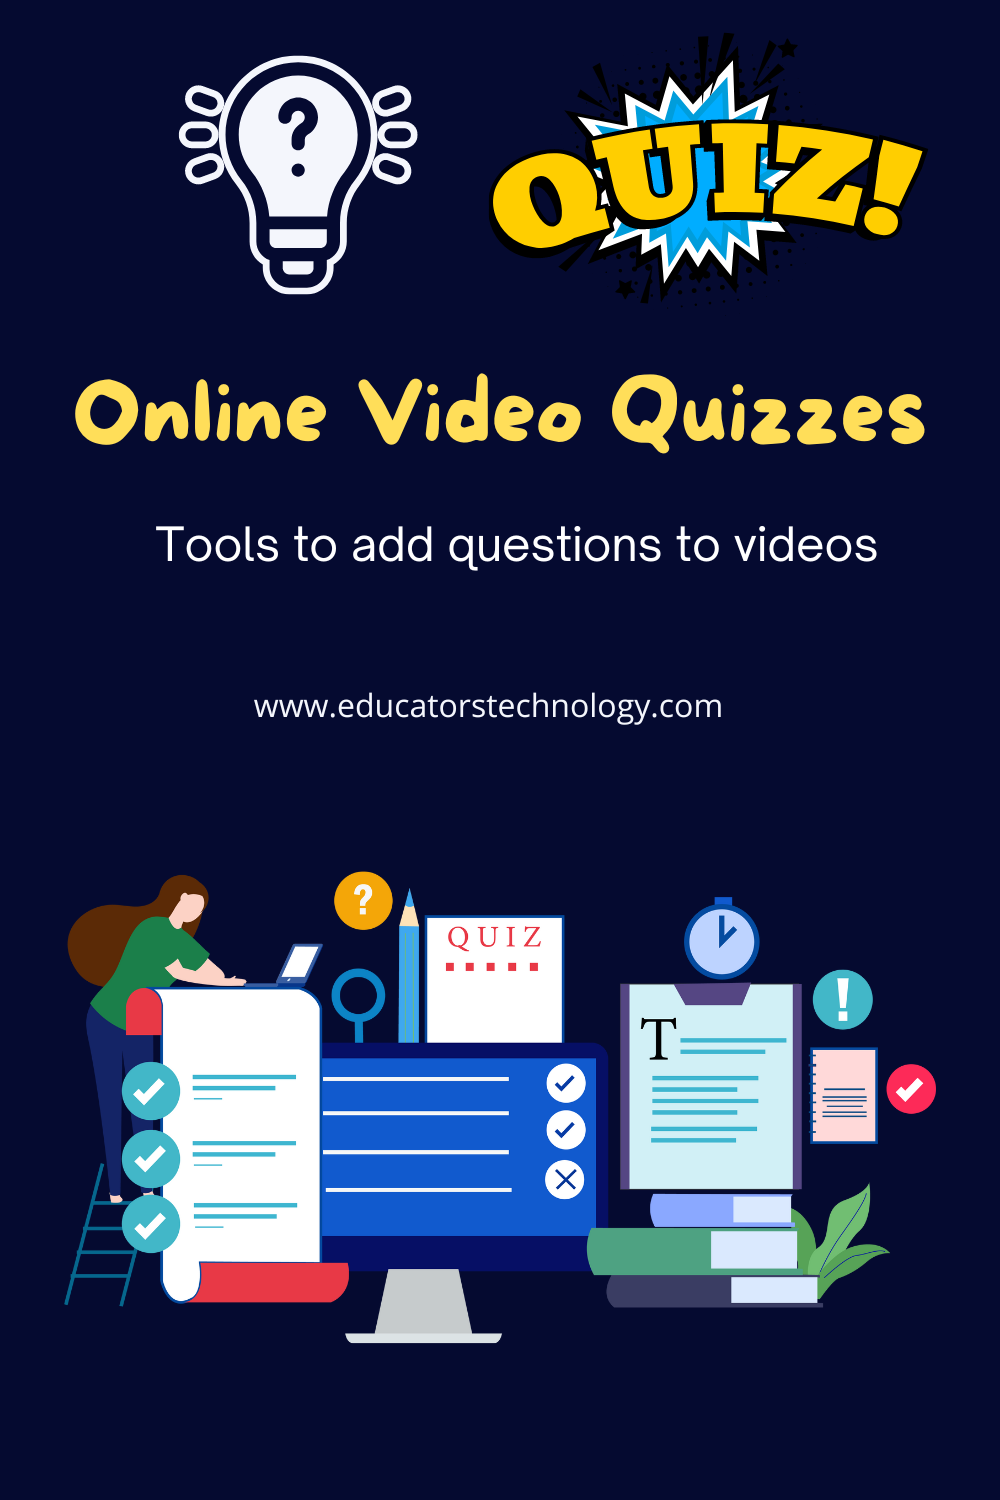 Online video quizzes